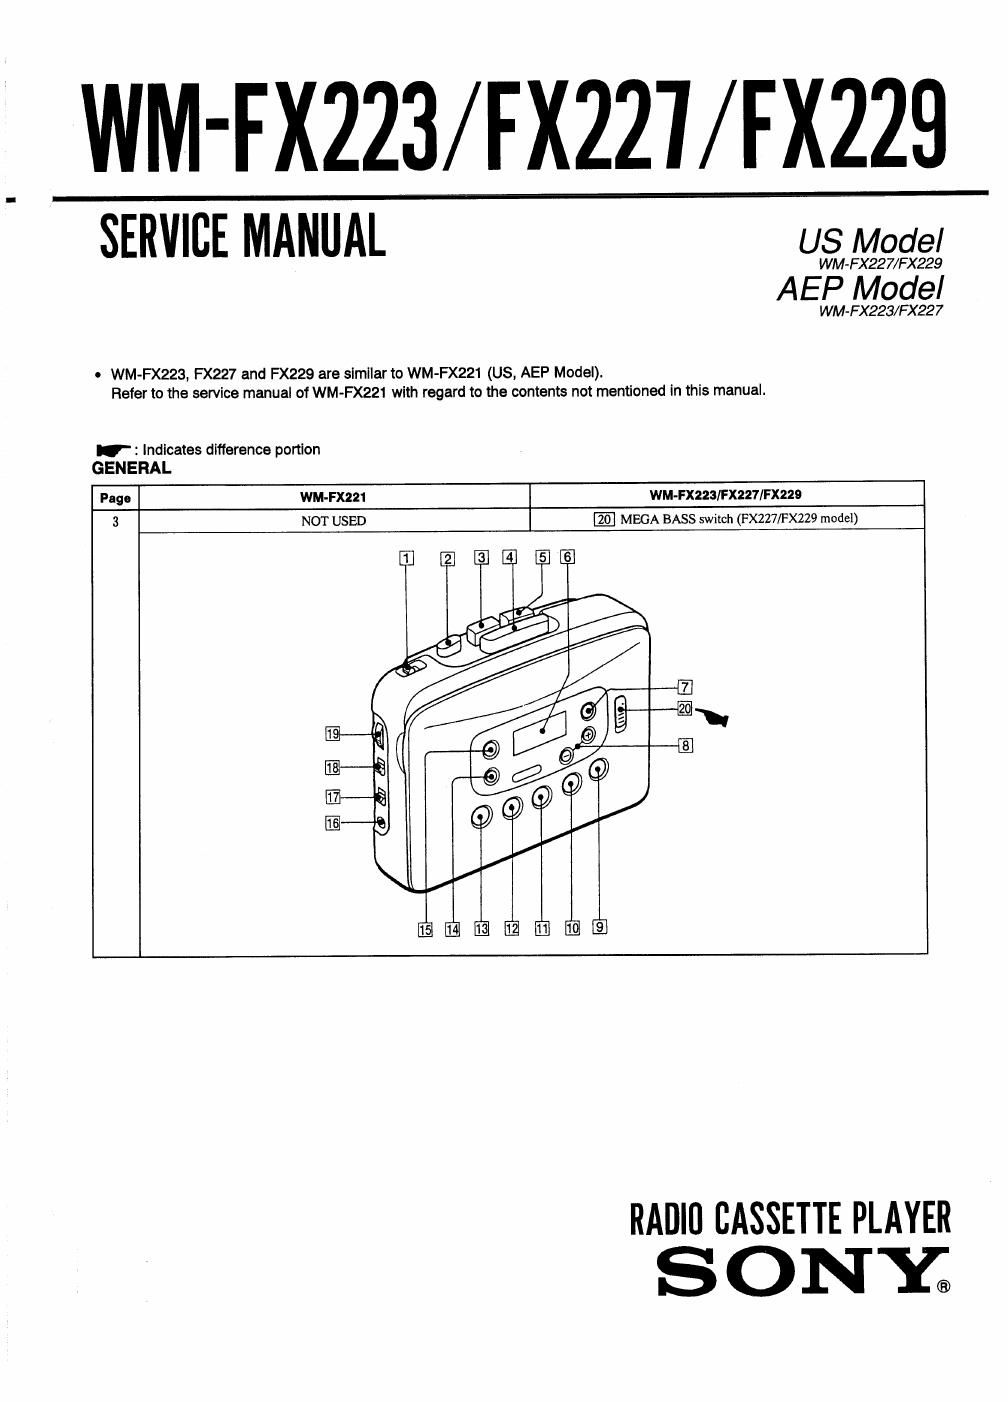 sony wm fx 223 service manual